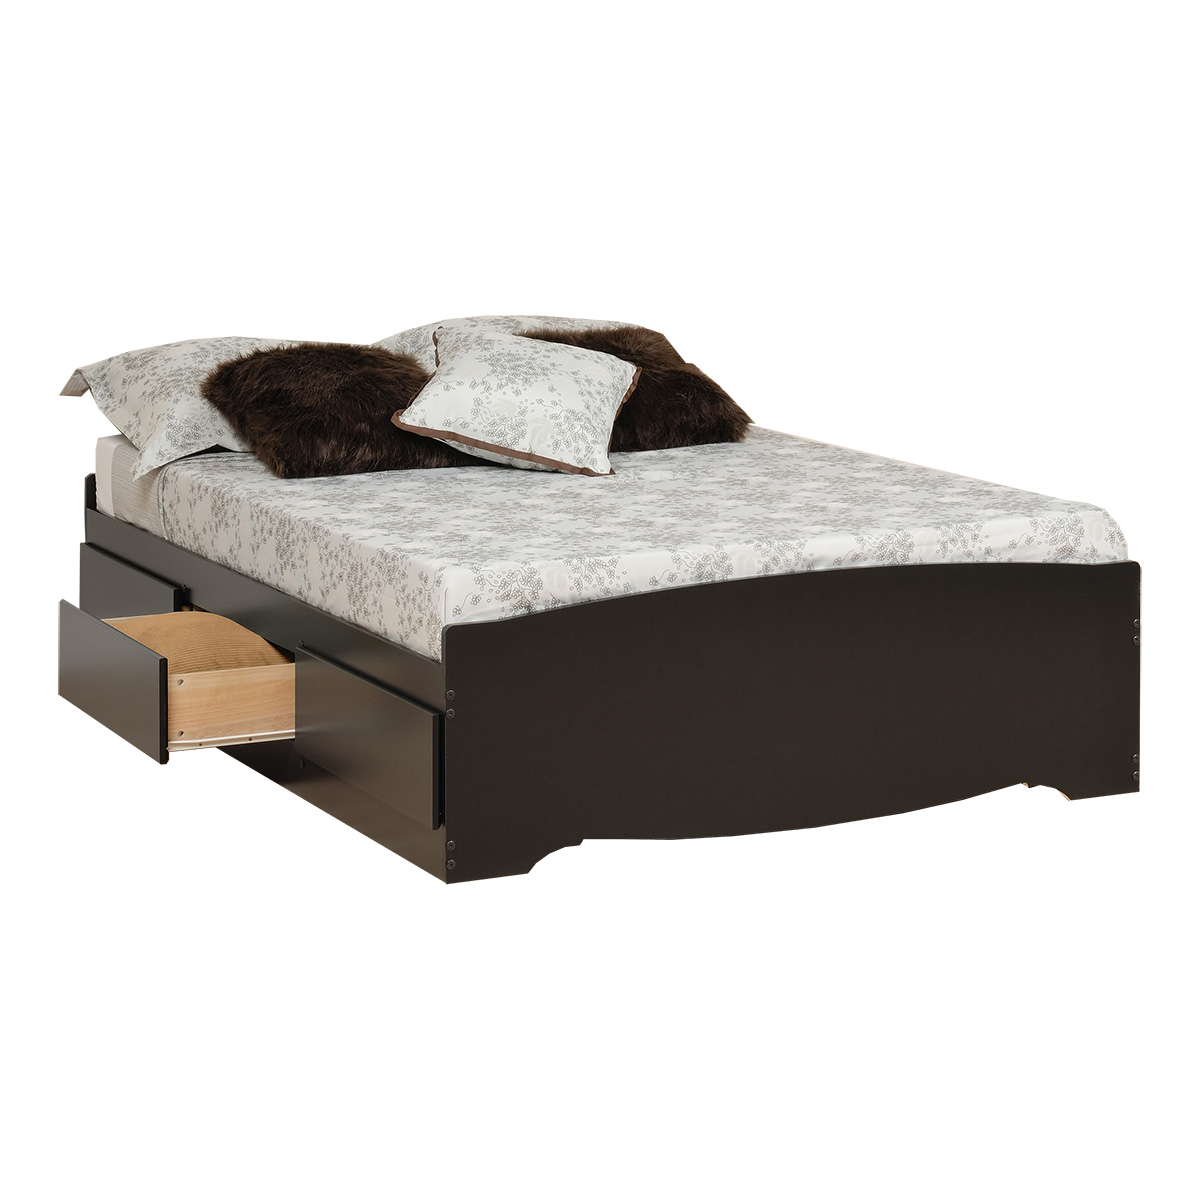 Storage Platform Bed Black, King Size Platform Bed With Drawers